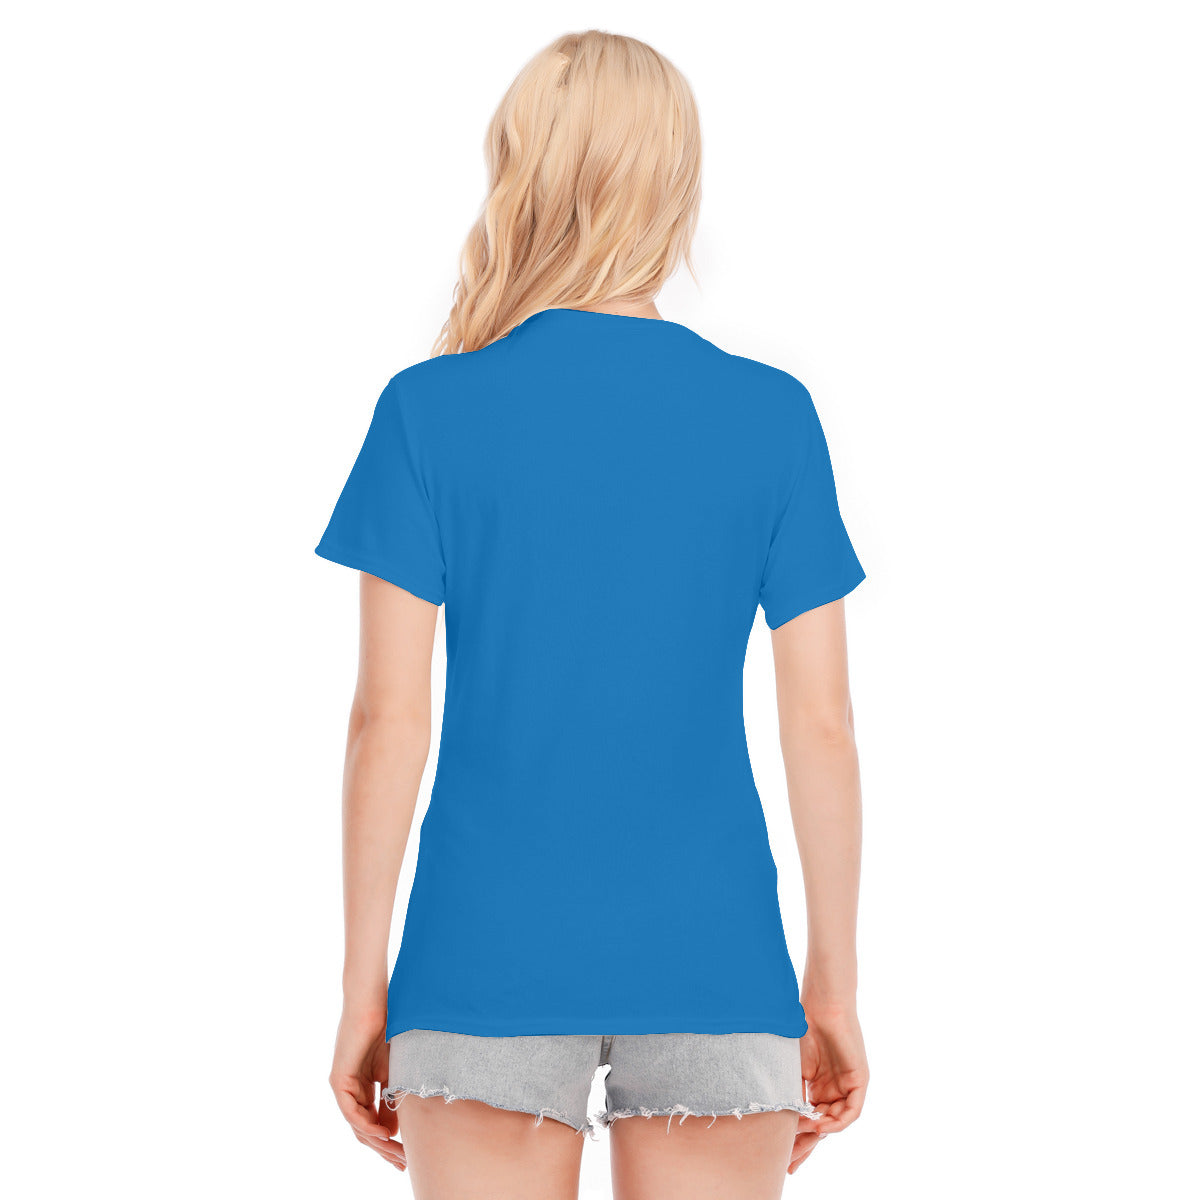 Fantasy 173 -- Unisex O-neck Short Sleeve T-shirt